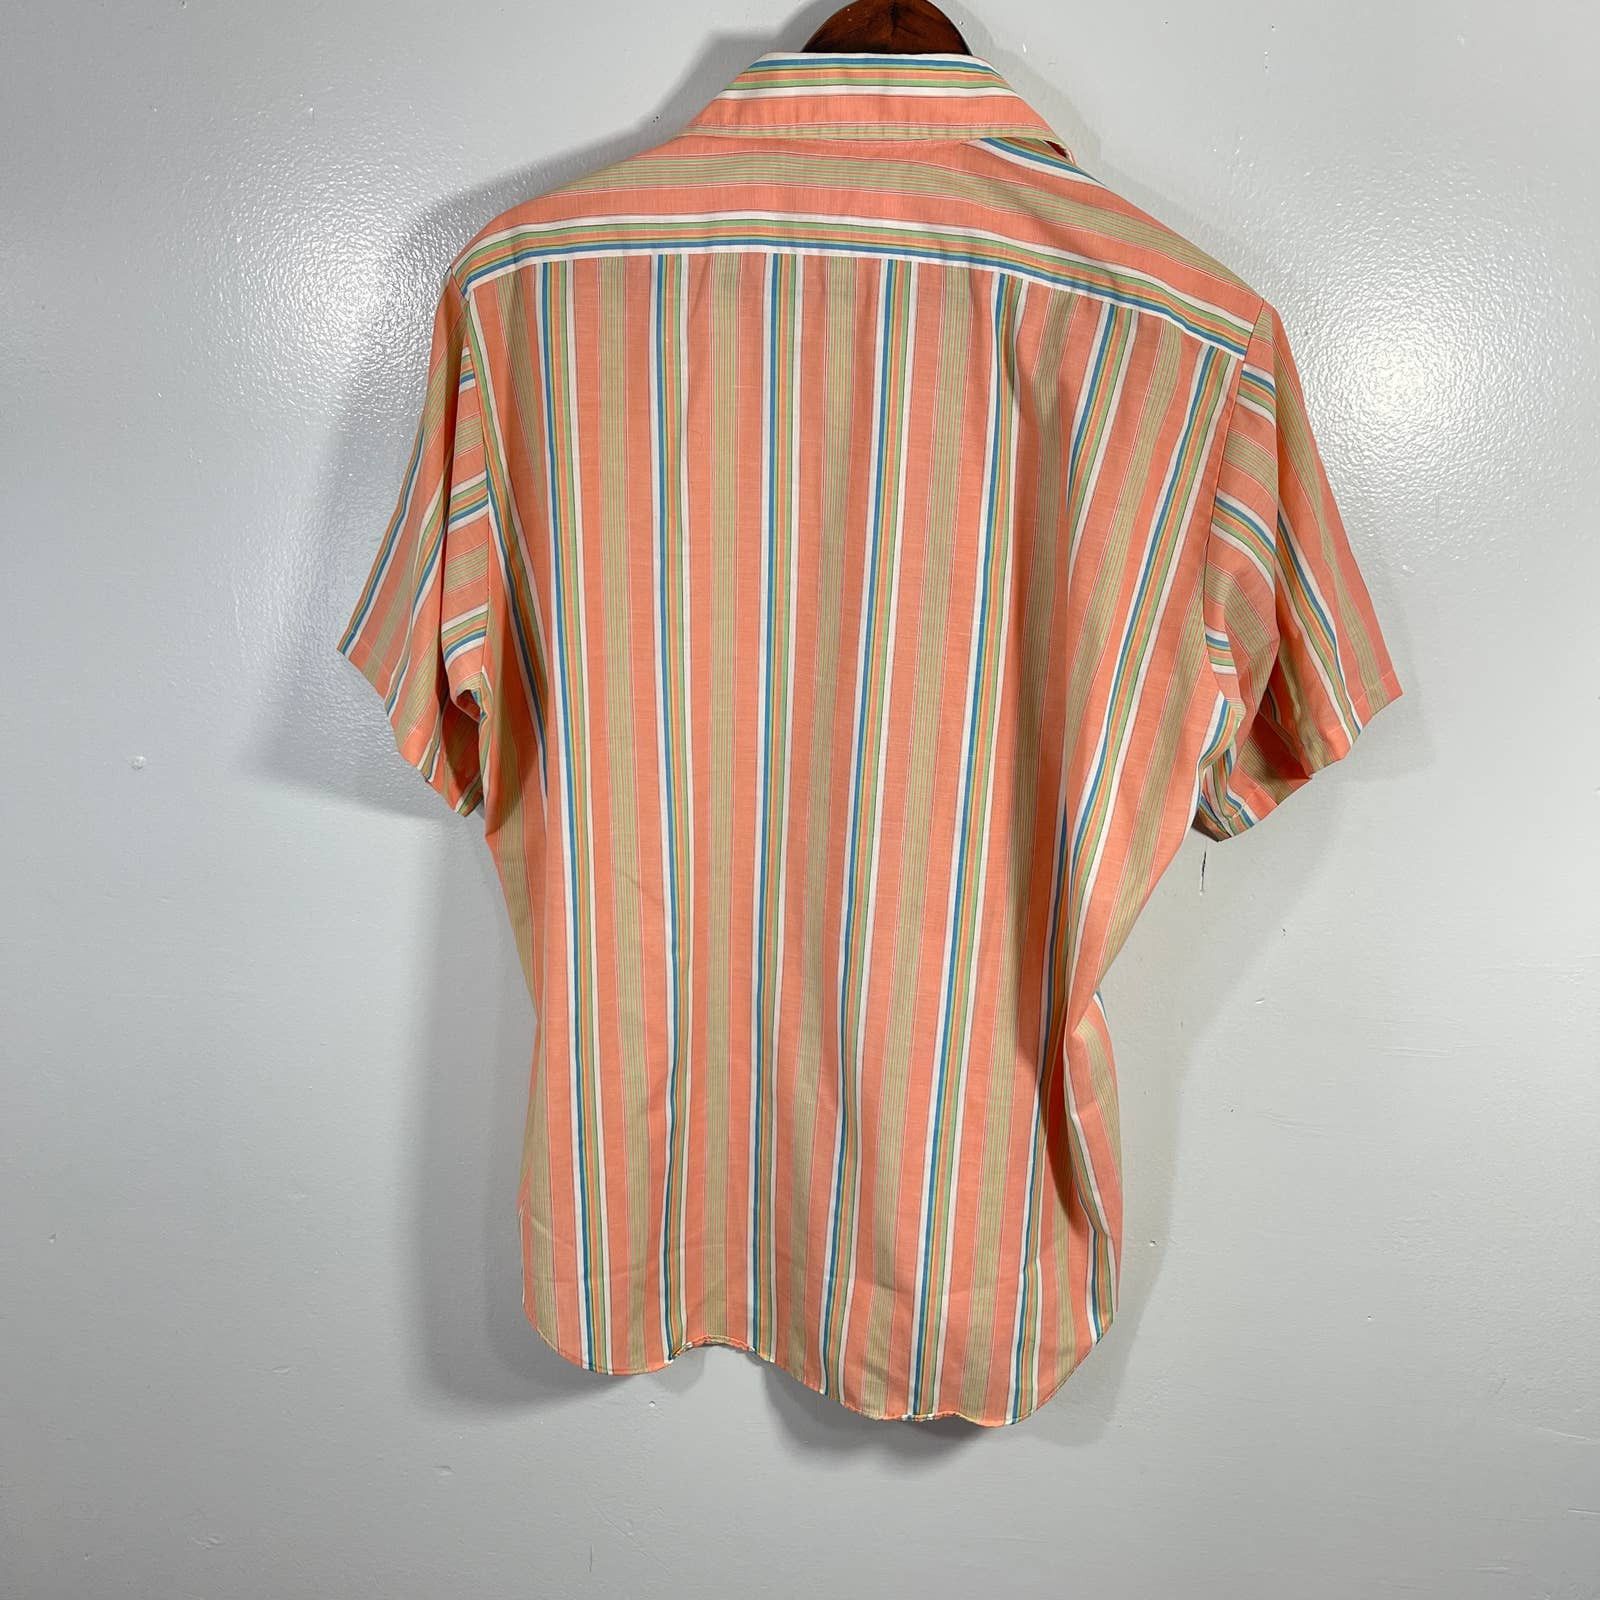 Vintage VINTAGE 1970s Vertical Striped Camp Button Shirt Size US XL / EU 56 / 4 - 4 Thumbnail